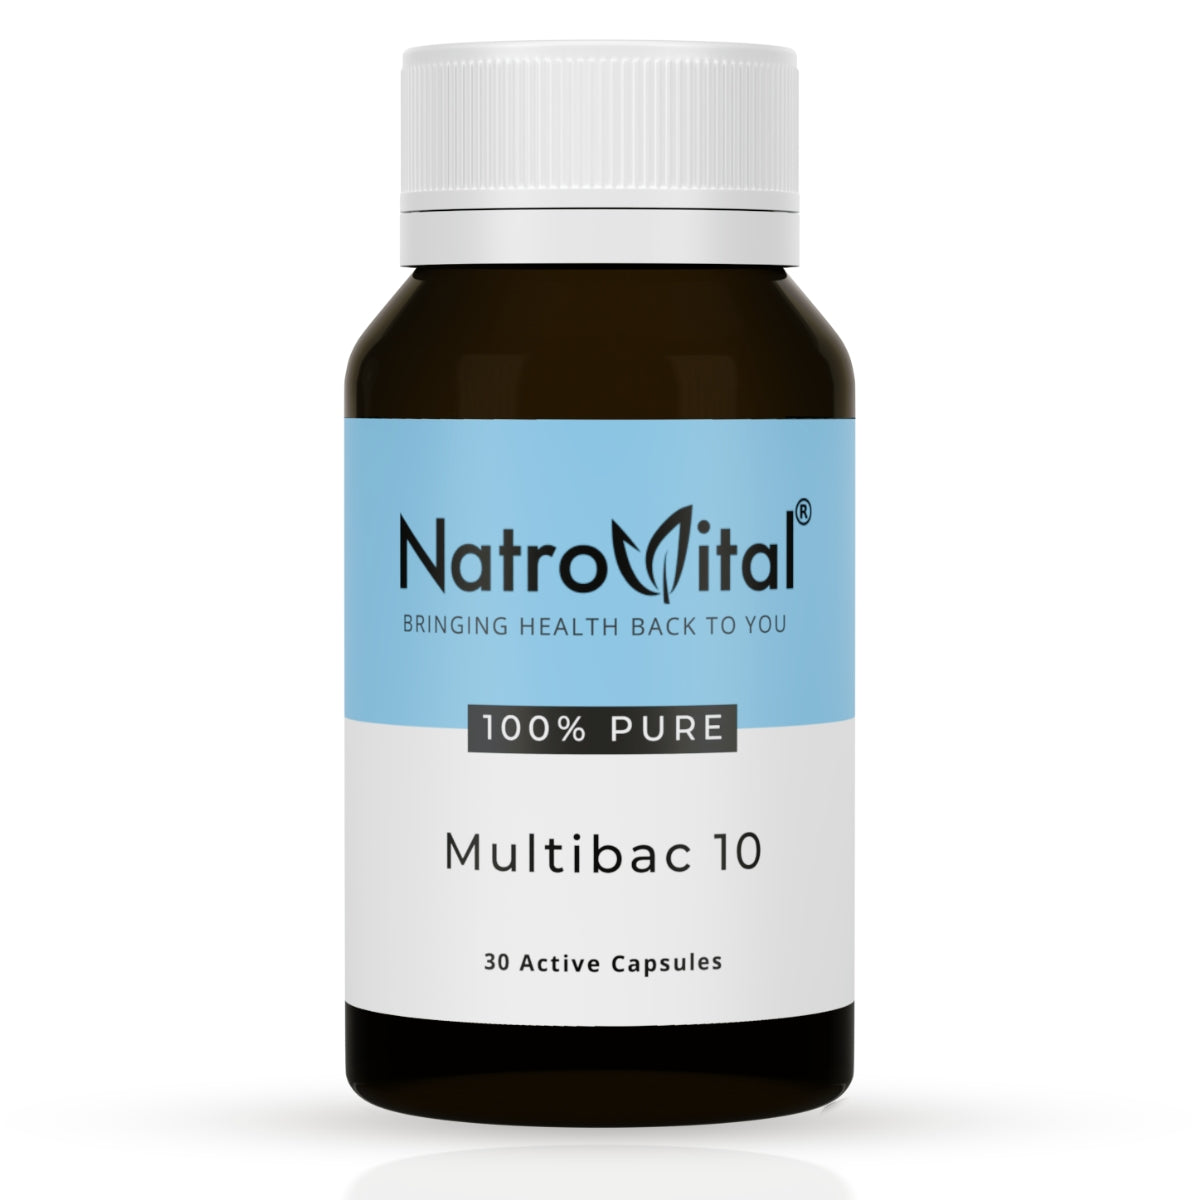 NatroVital Multibac 10 30 Capsules | NatroVital